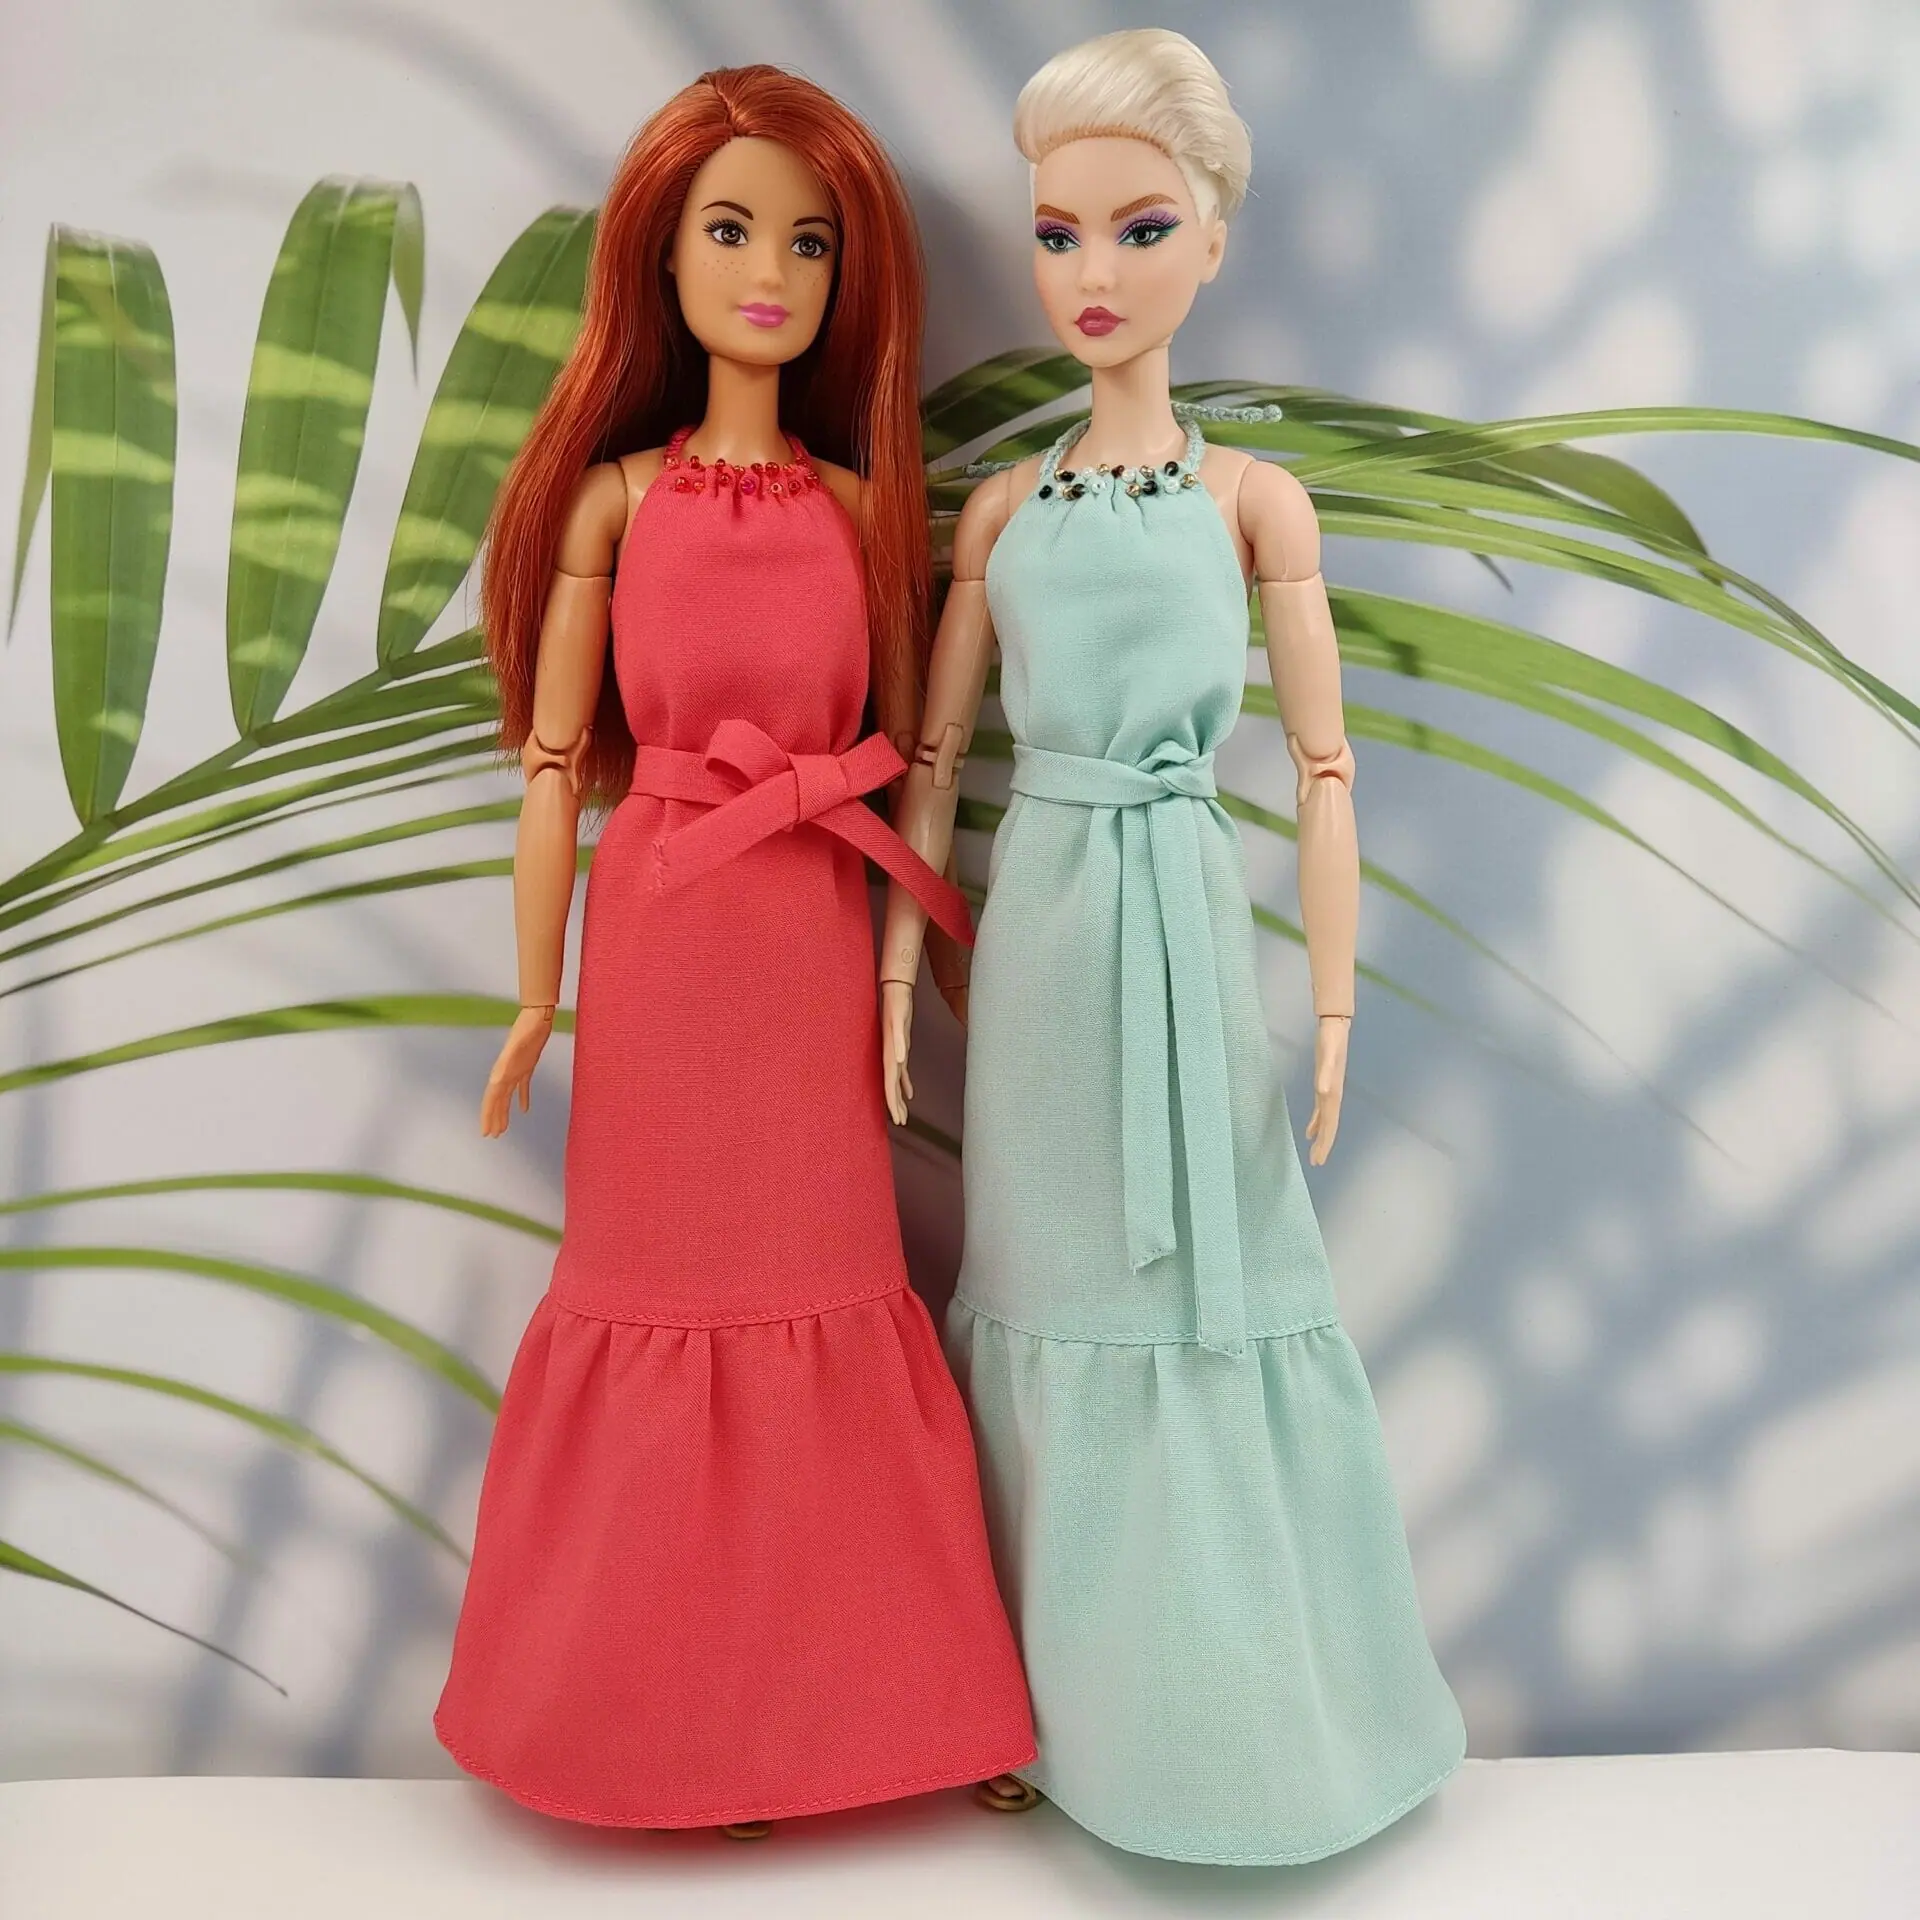 24/Lookstyledolls | Barbie dress fashion, Barbie gowns, Disney barbie dolls